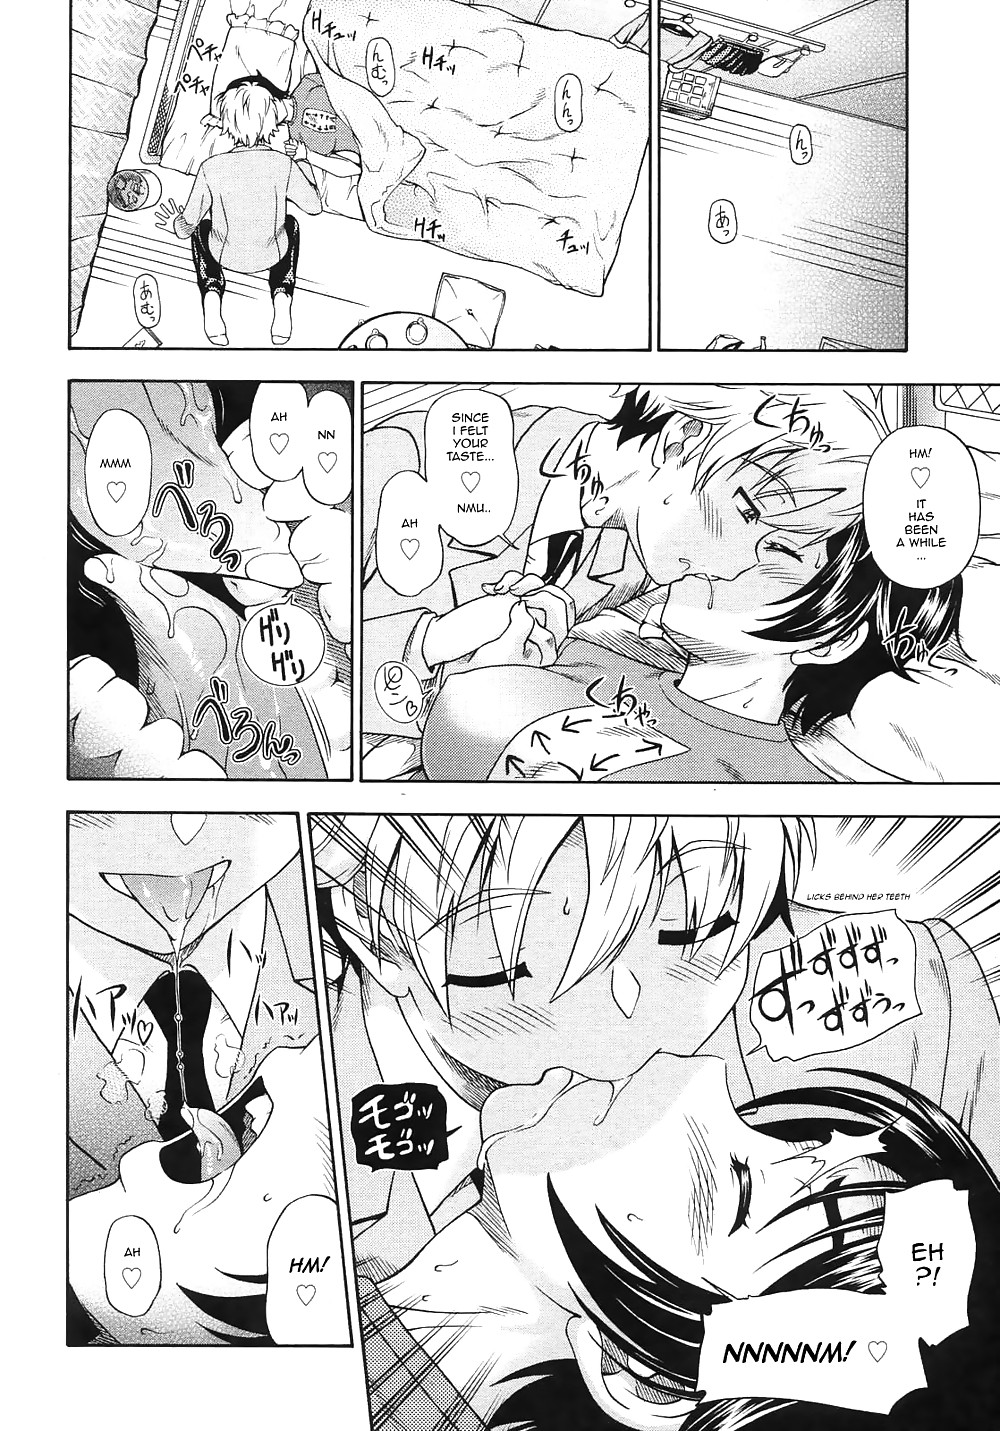 (fumetto hentai) fukudada opere erotiche #1
 #21011686